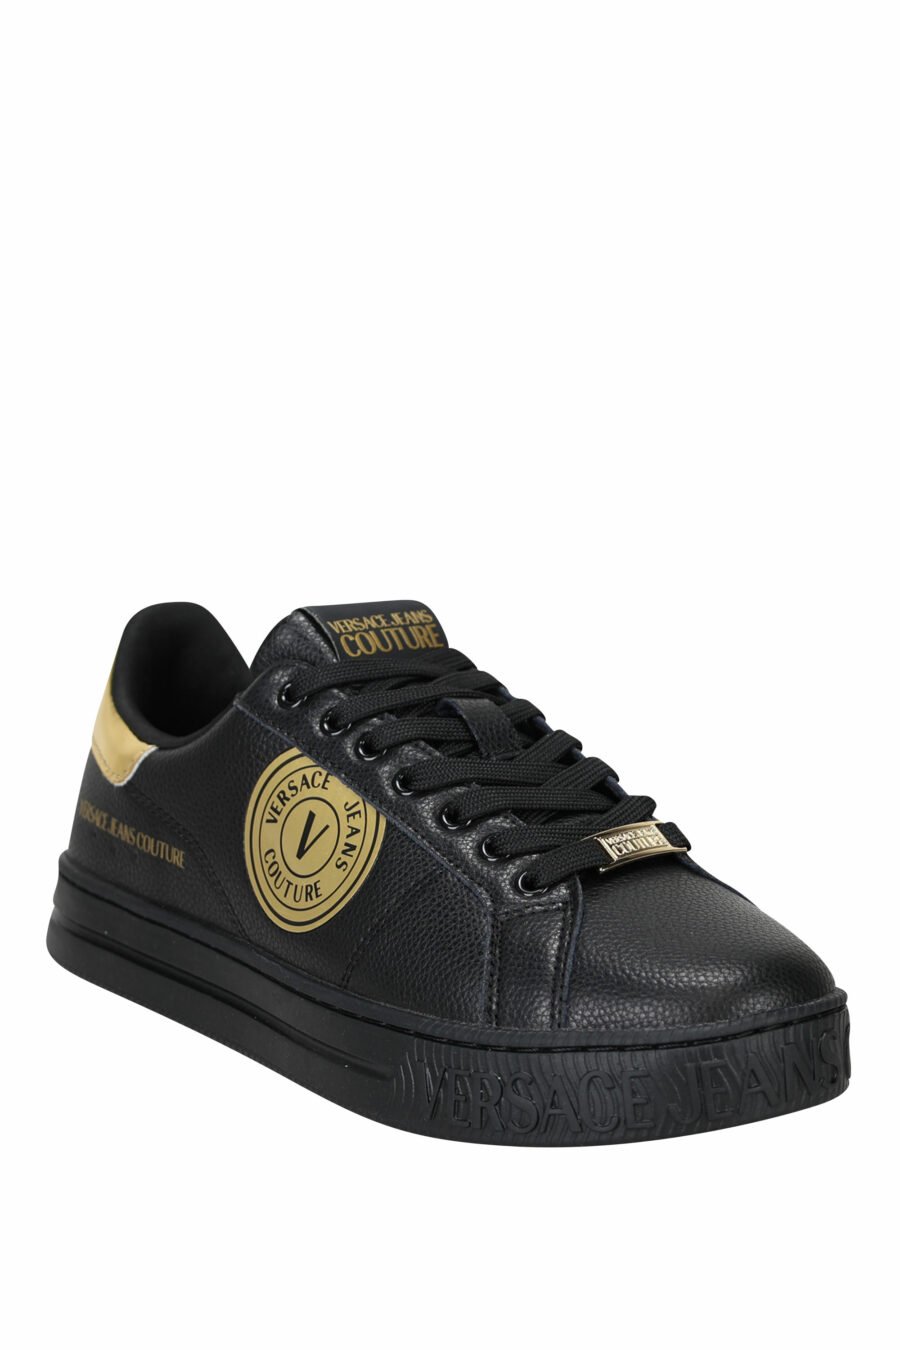 Zapatillas negras de cuero con detalles en dorado y logo circular - 8052019453560 1